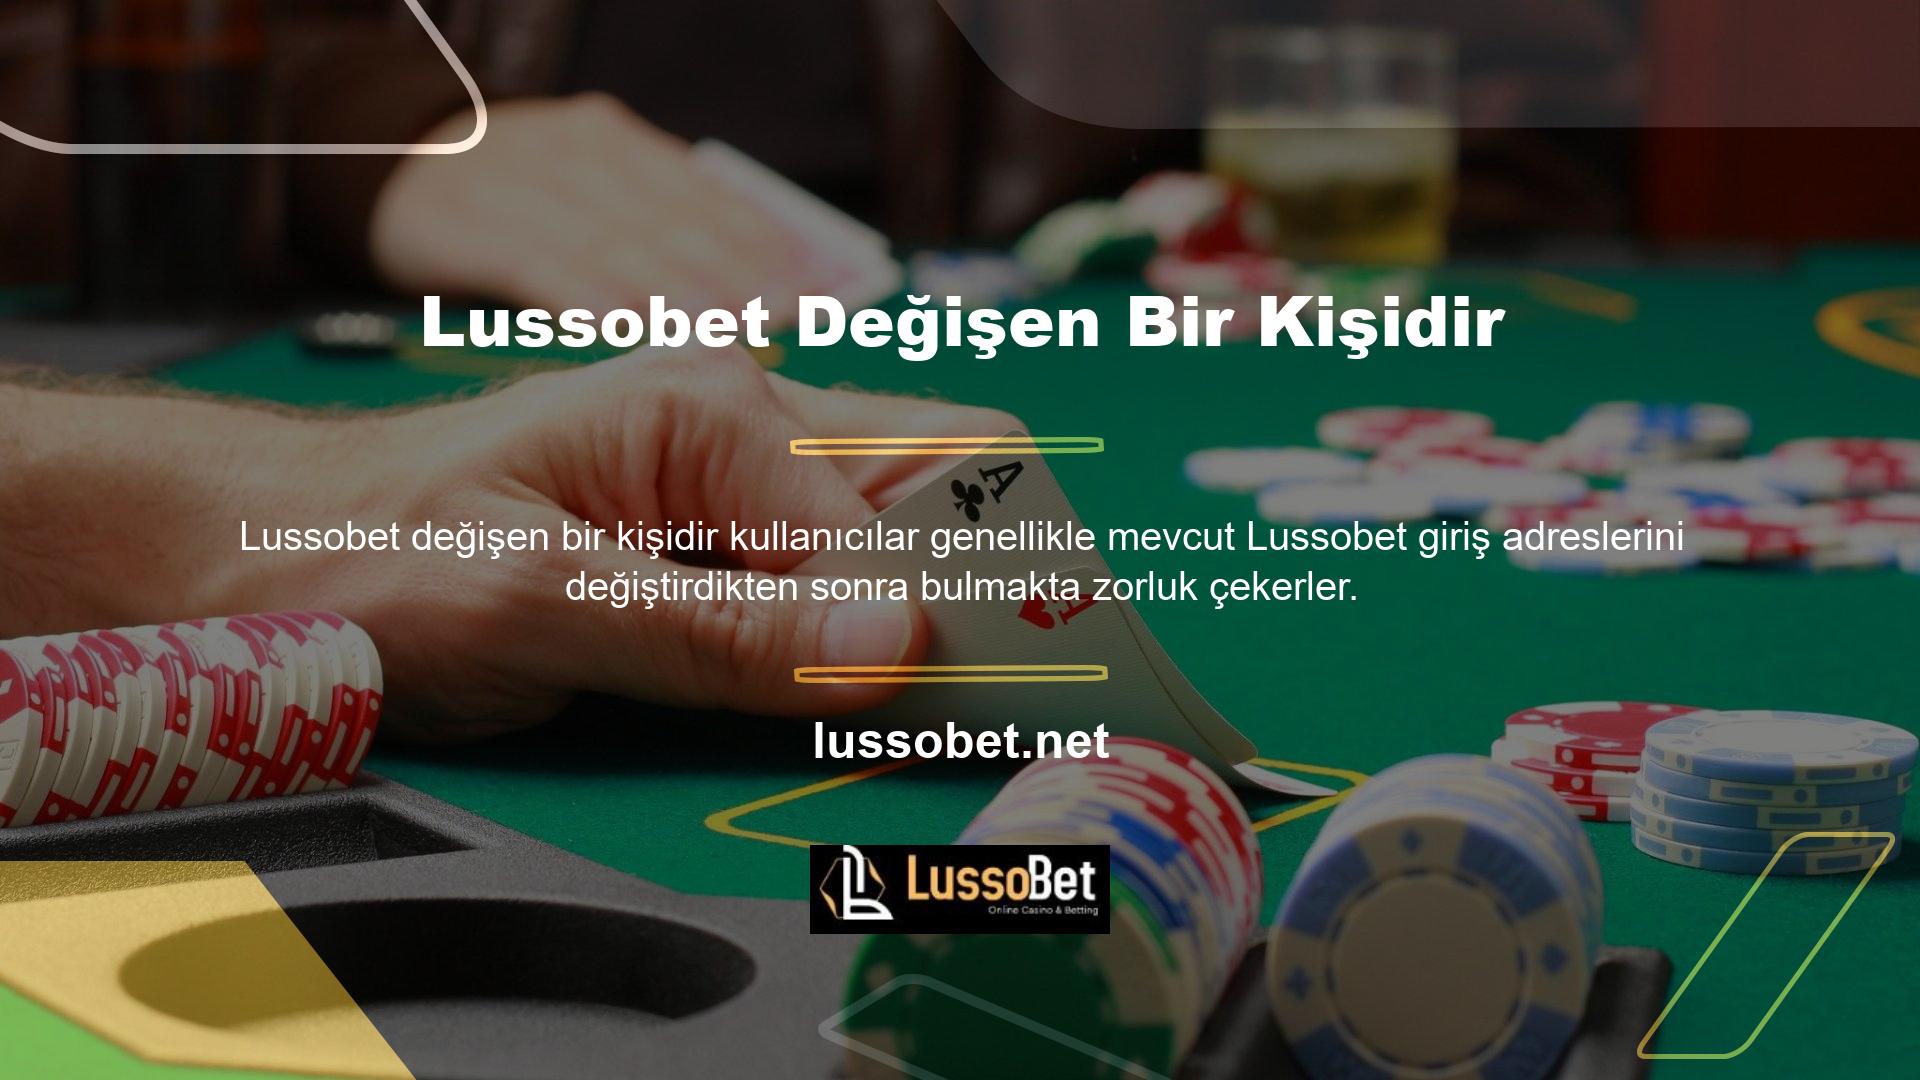 Özellikle Lussobet Casino ve Bahis Platformuna yeni üye iseniz veya üye olmak istiyorsanız güncel adresinizi kontrol etmenin bir yolu bulunmaktadır